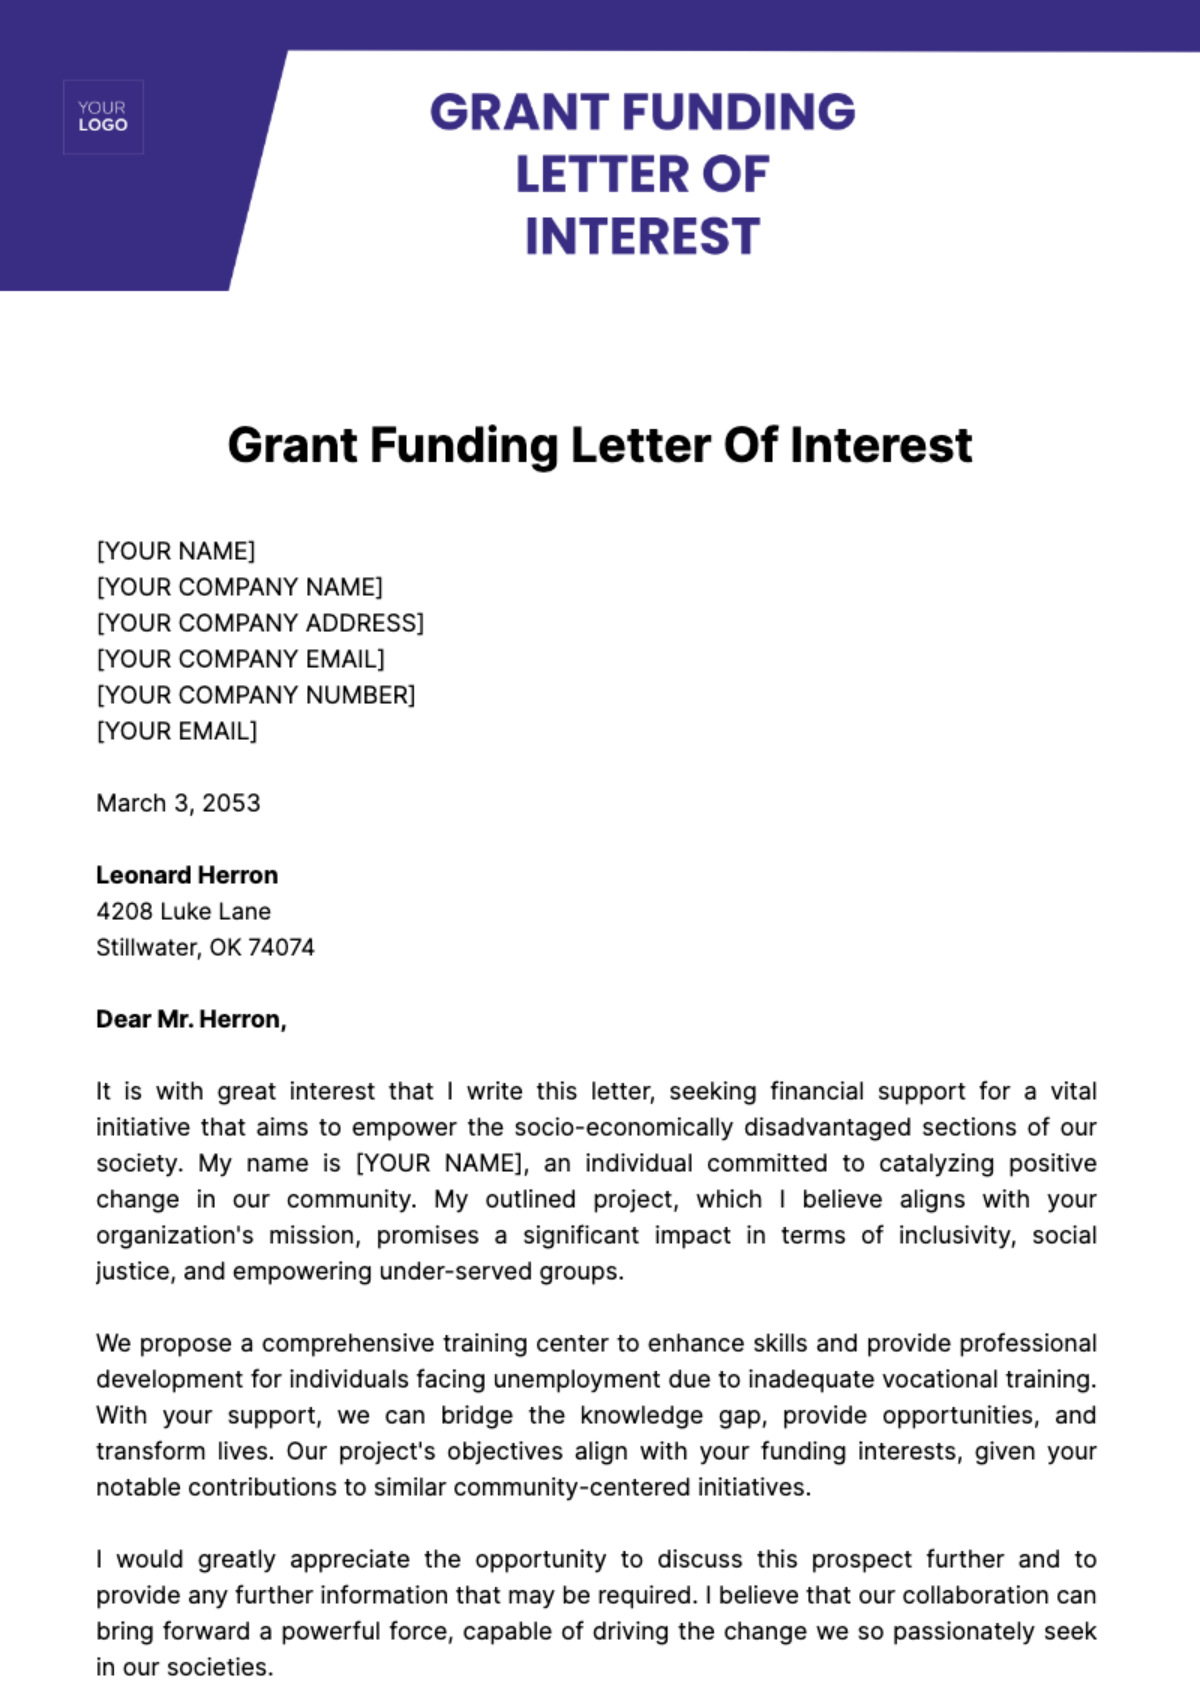 Grant Funding Letter of Interest Template